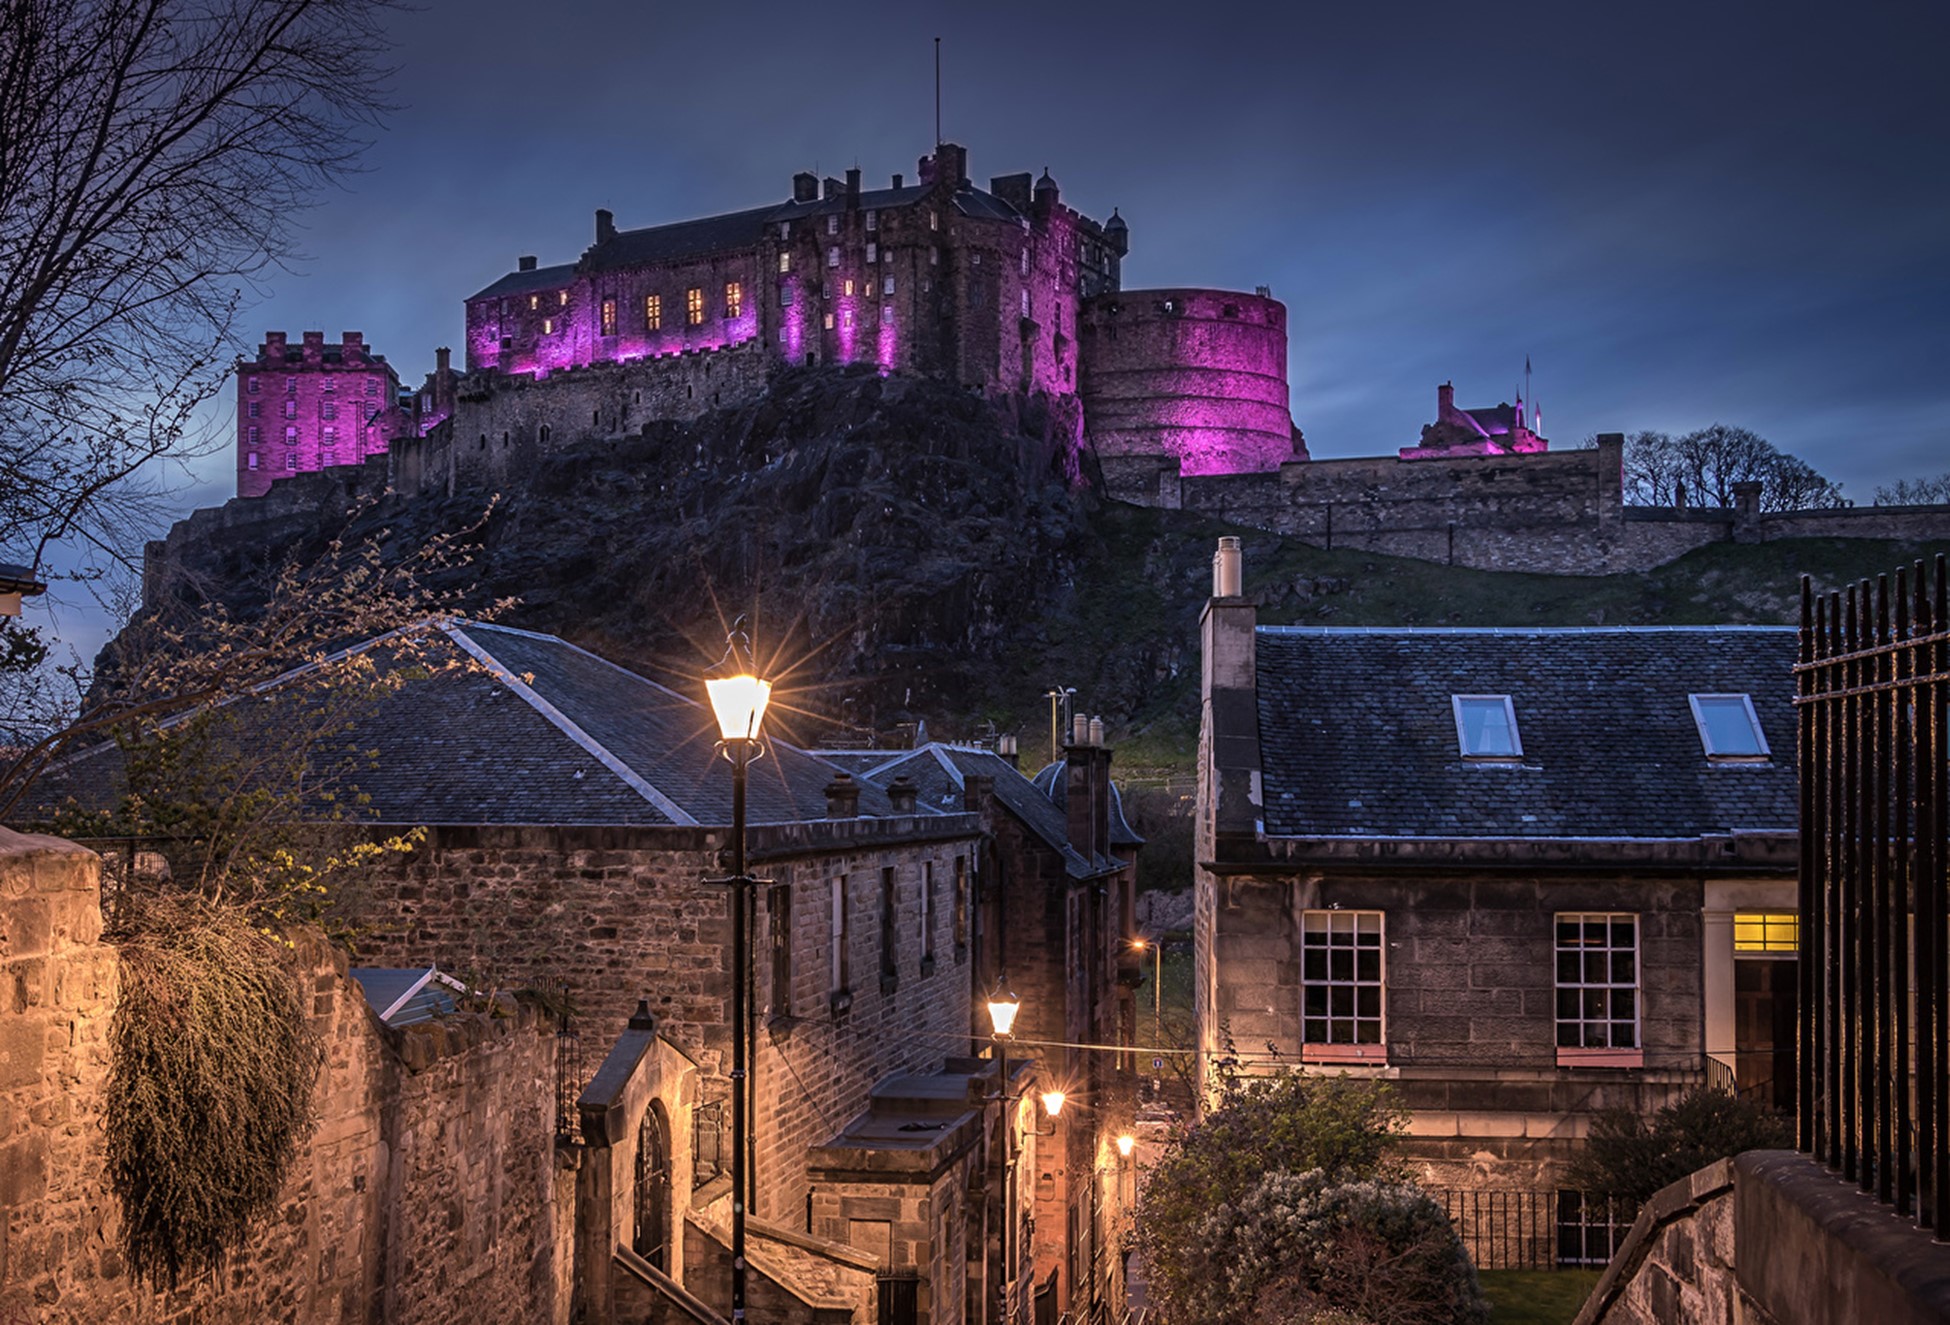 En smuk og varm gengivelse af Edinburghs bydelsgader om aftenen med udsigt over den fængslende udsigt over det historiske slot. Dette fortsætter med at tjene som en moderne påmindelse om landets robuste og livlige fortid.